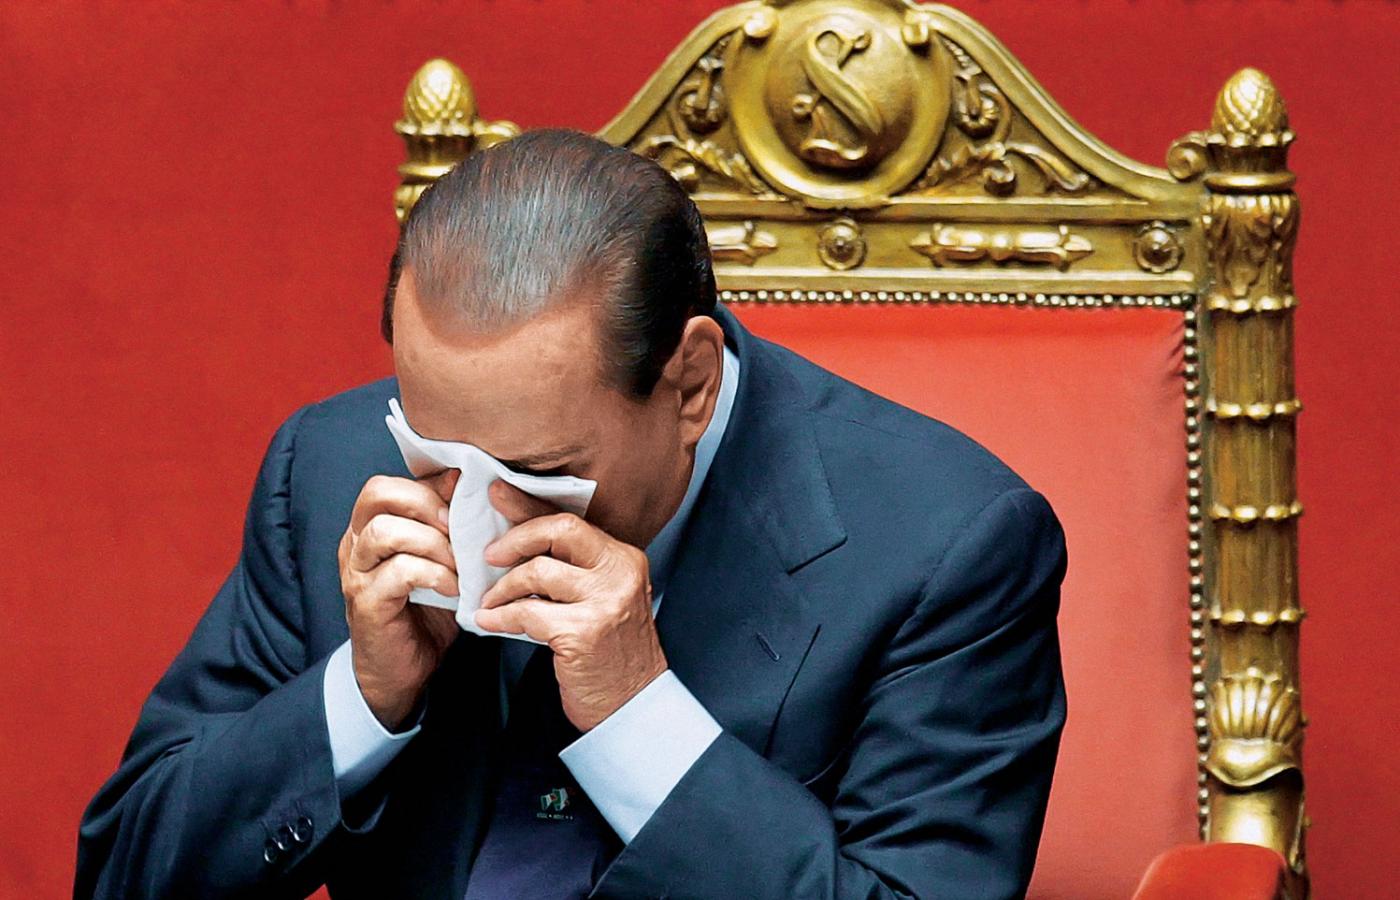 We Włoszech już nikt nie zastanawia się, czy Berlusconi ustąpi. Pytanie brzmi: kiedy to się stanie i co potem.